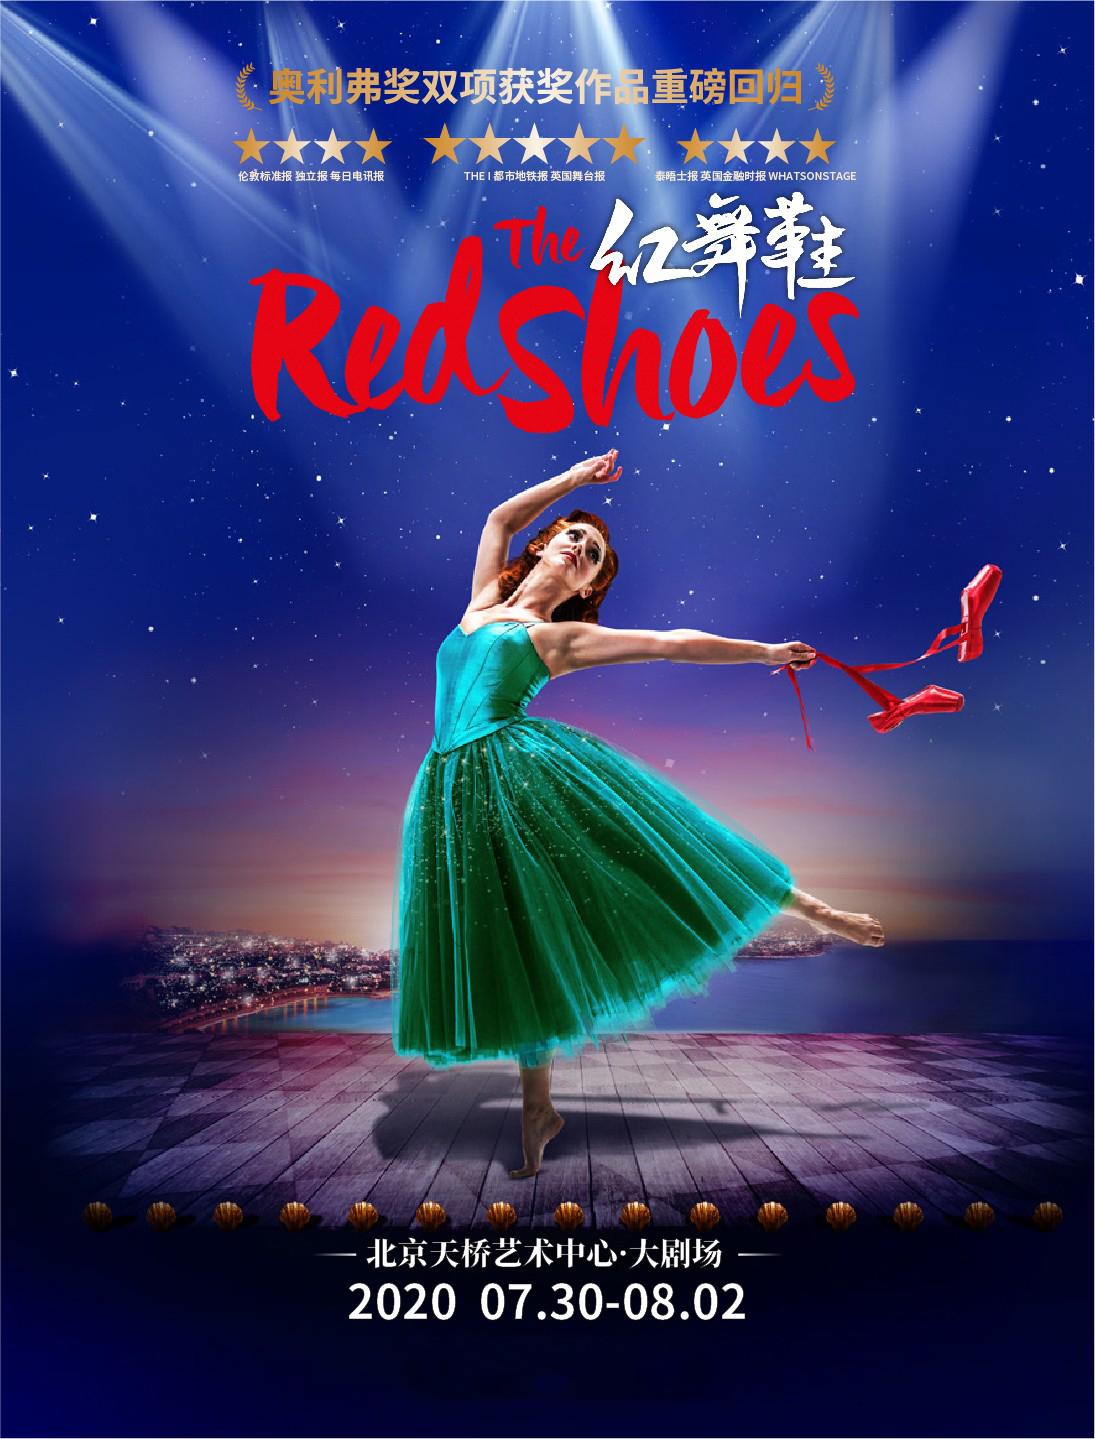 新冒险舞团《红舞鞋》北京站